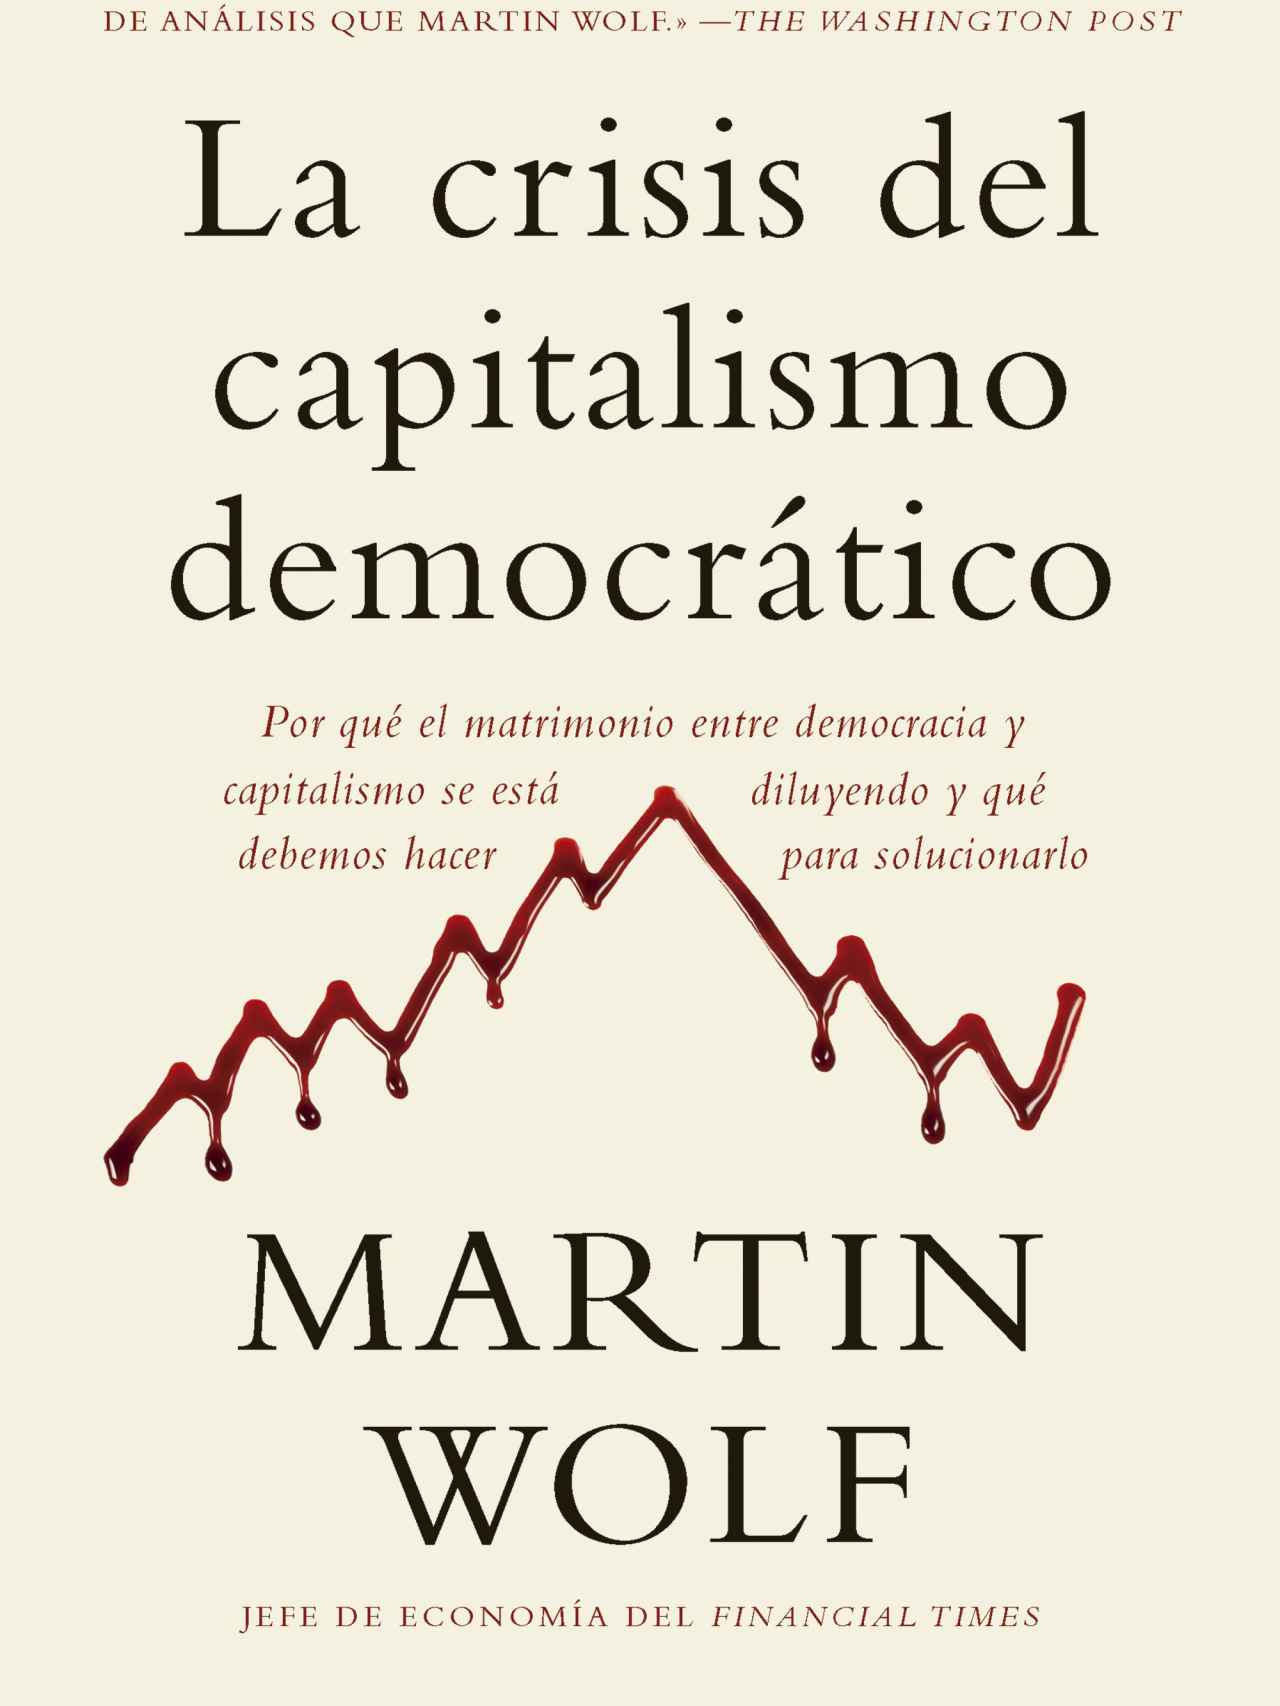 'La crisis del capitalismo democratico'